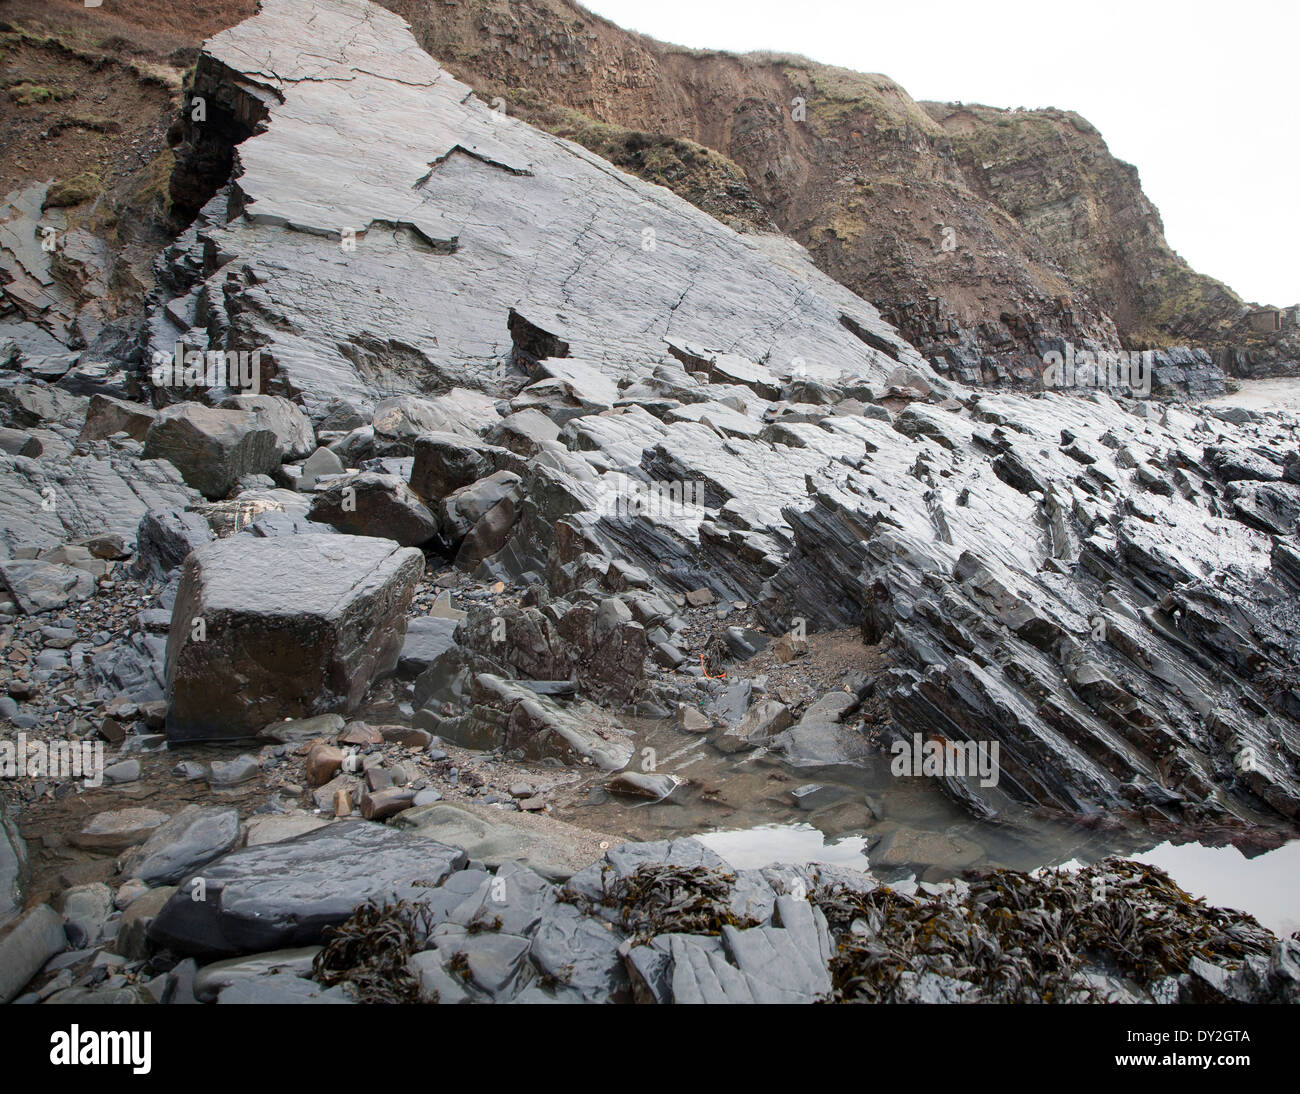 Felsigen Welle schneiden Plattform erosive Landschaftsformen mit Bergrücken gebildet von erodierten geneigten Schichten am Hartland Quay, North Devon, England Stockfoto